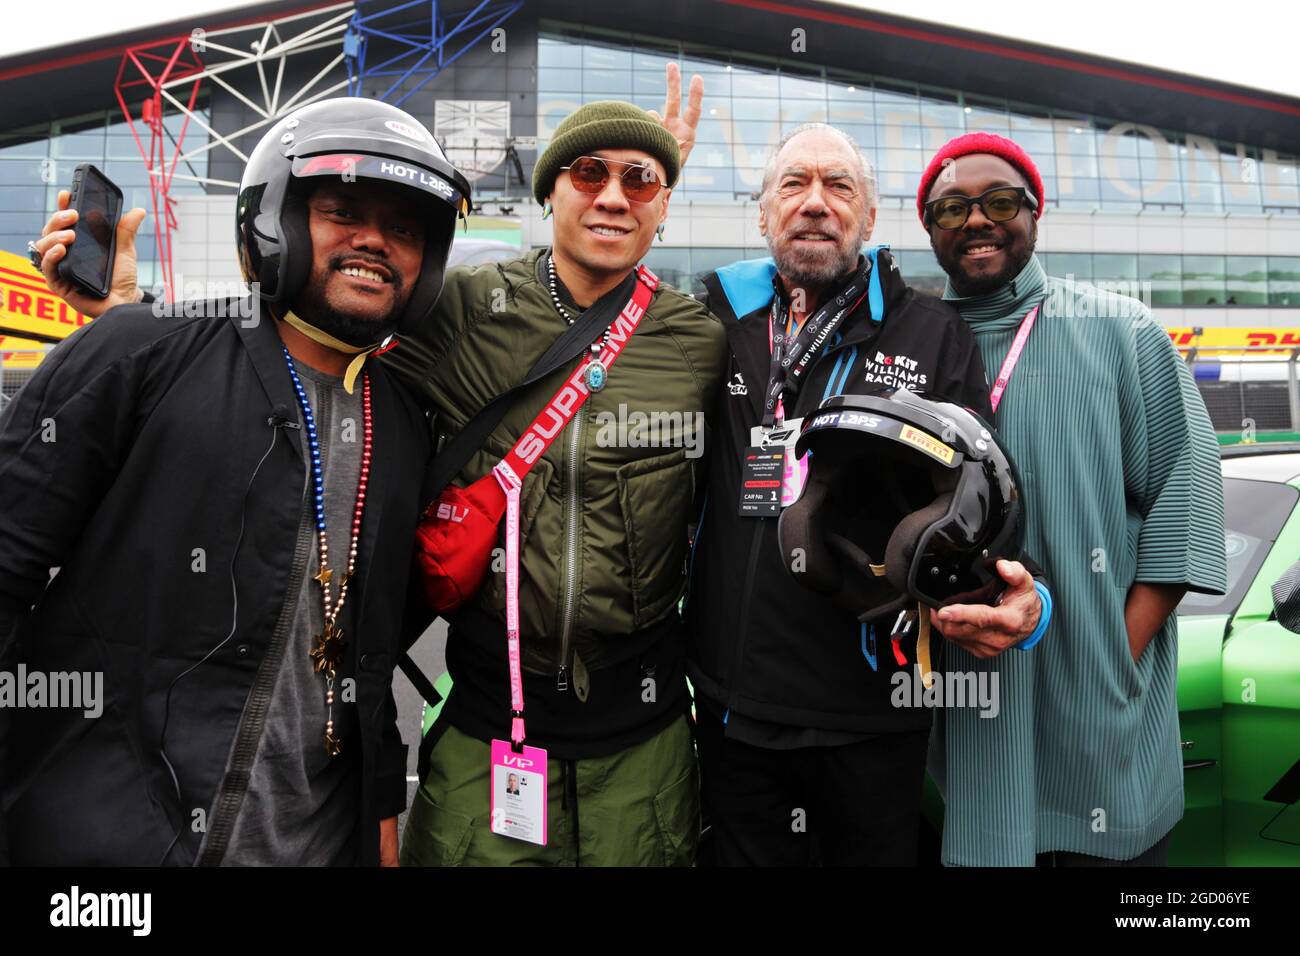 (L a R): apl.de.ap (EE.UU.) Black Eyed Peas; Taboo (EE.UU.) Black Eyed Peas; John Paul DeJoria (EE.UU.) ROK Group Co-Fundador - Williams Racing guest; Will.i.am (EE.UU.) Black Eyed Peas. Gran Premio de Gran Bretaña, sábado 13th de julio de 2019. Silverstone, Inglaterra. Foto de stock